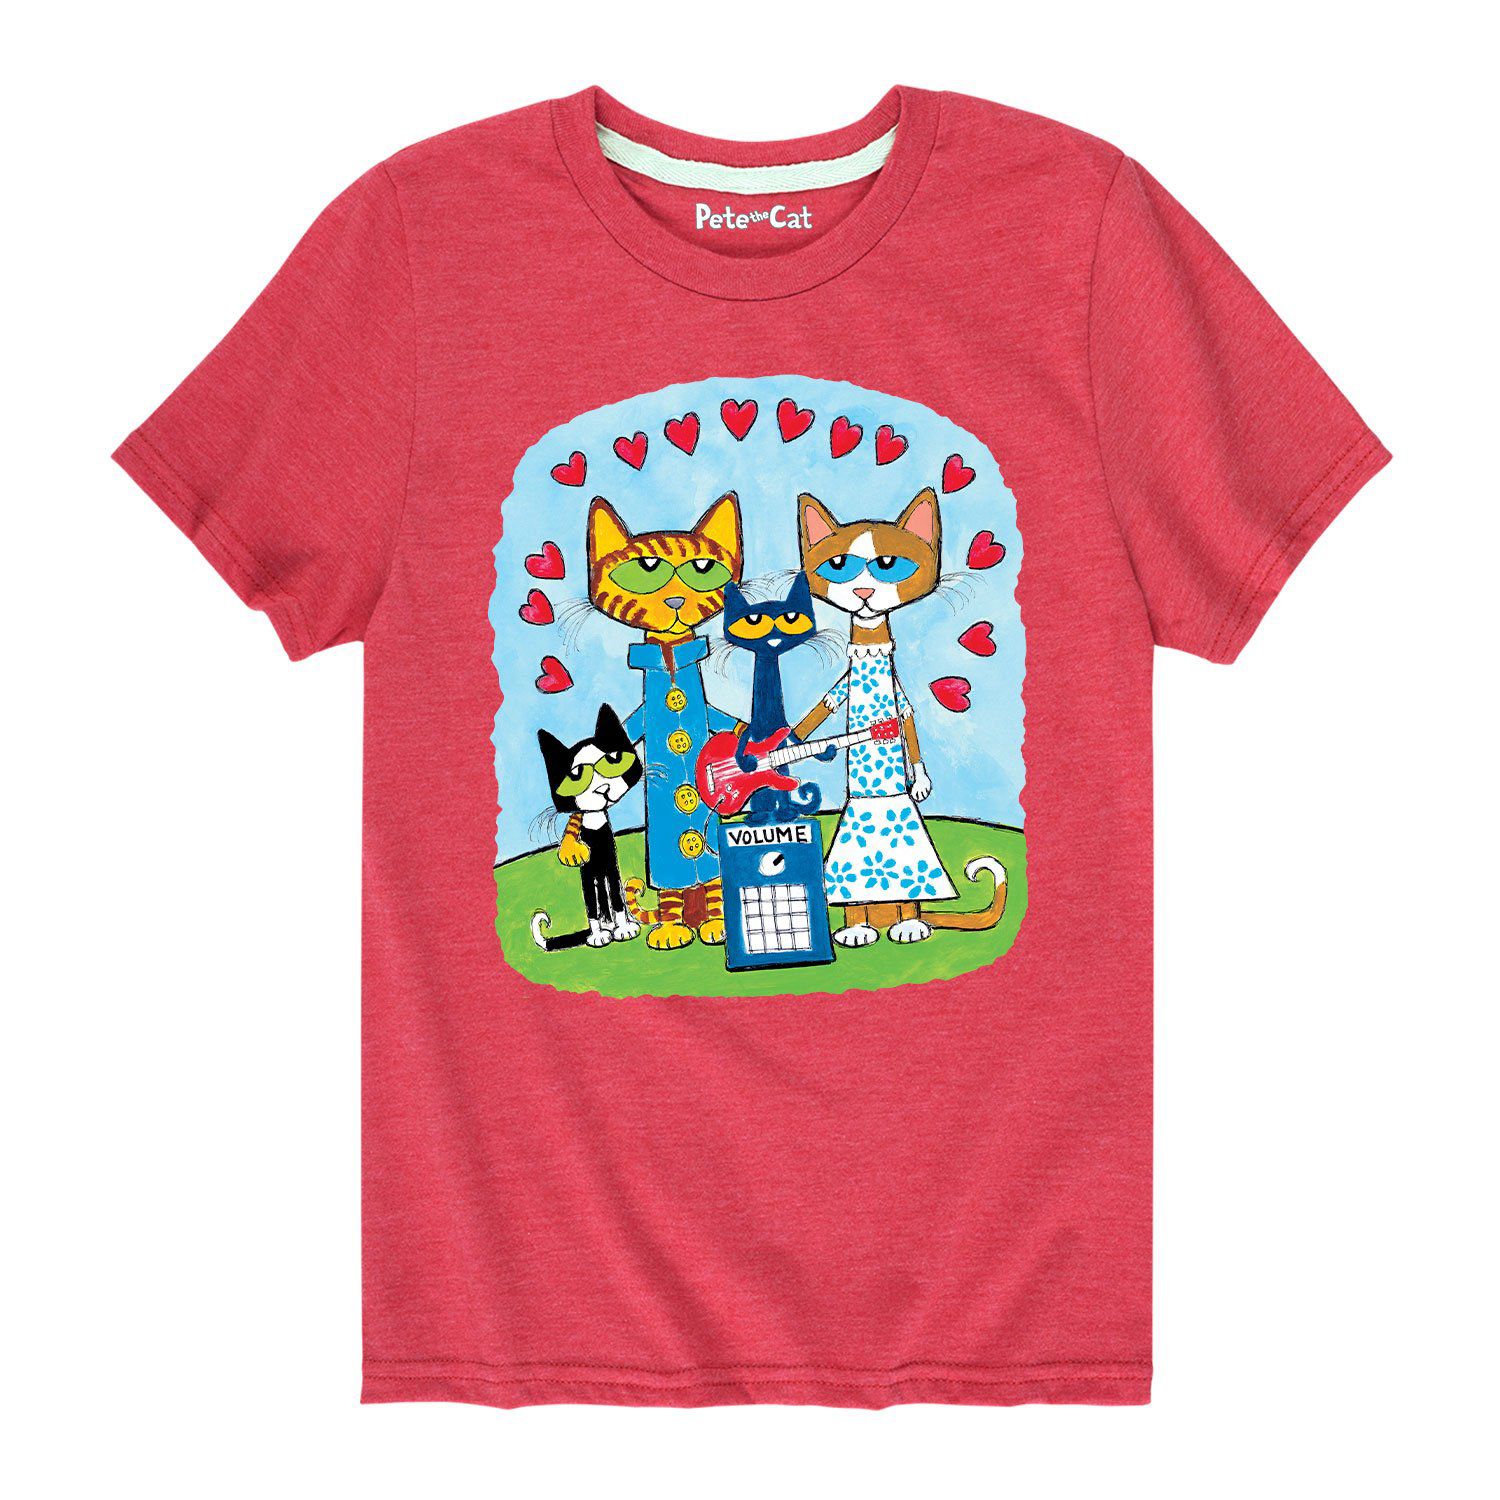 Футболка с рисунком Pete The Cat Love для мальчиков 8–20 лет Licensed Character футболка groovy с рисунком pete the cat для мальчиков 8–20 лет licensed character